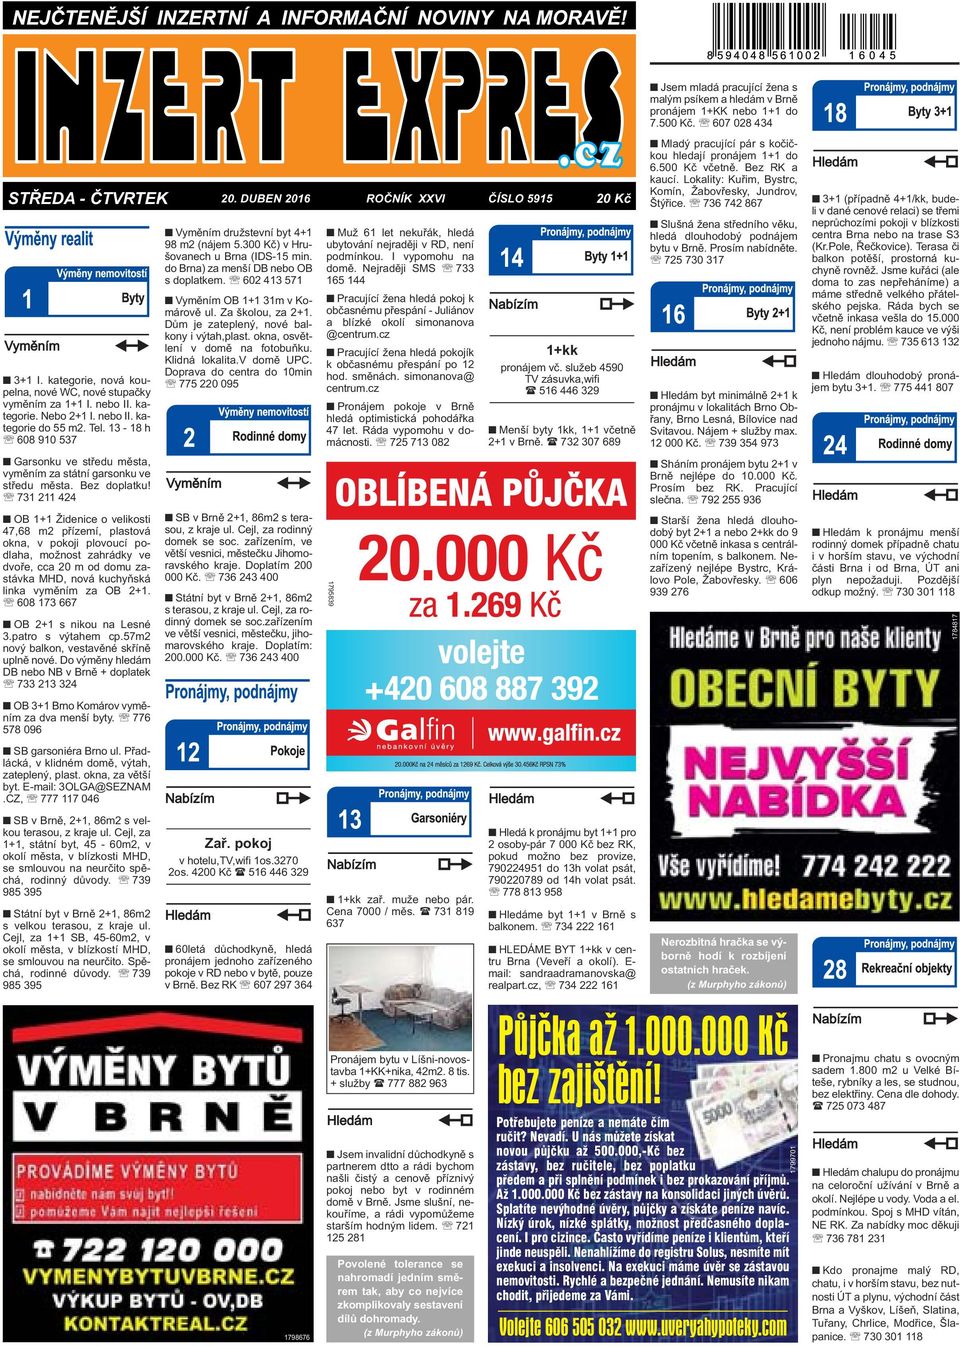 1+kk pronájem vč. služeb 4590 TV zásuvka,wifi ( Menší byty 1kk, 1+1 včetně  2+1 v Brně. ( - PDF Stažení zdarma